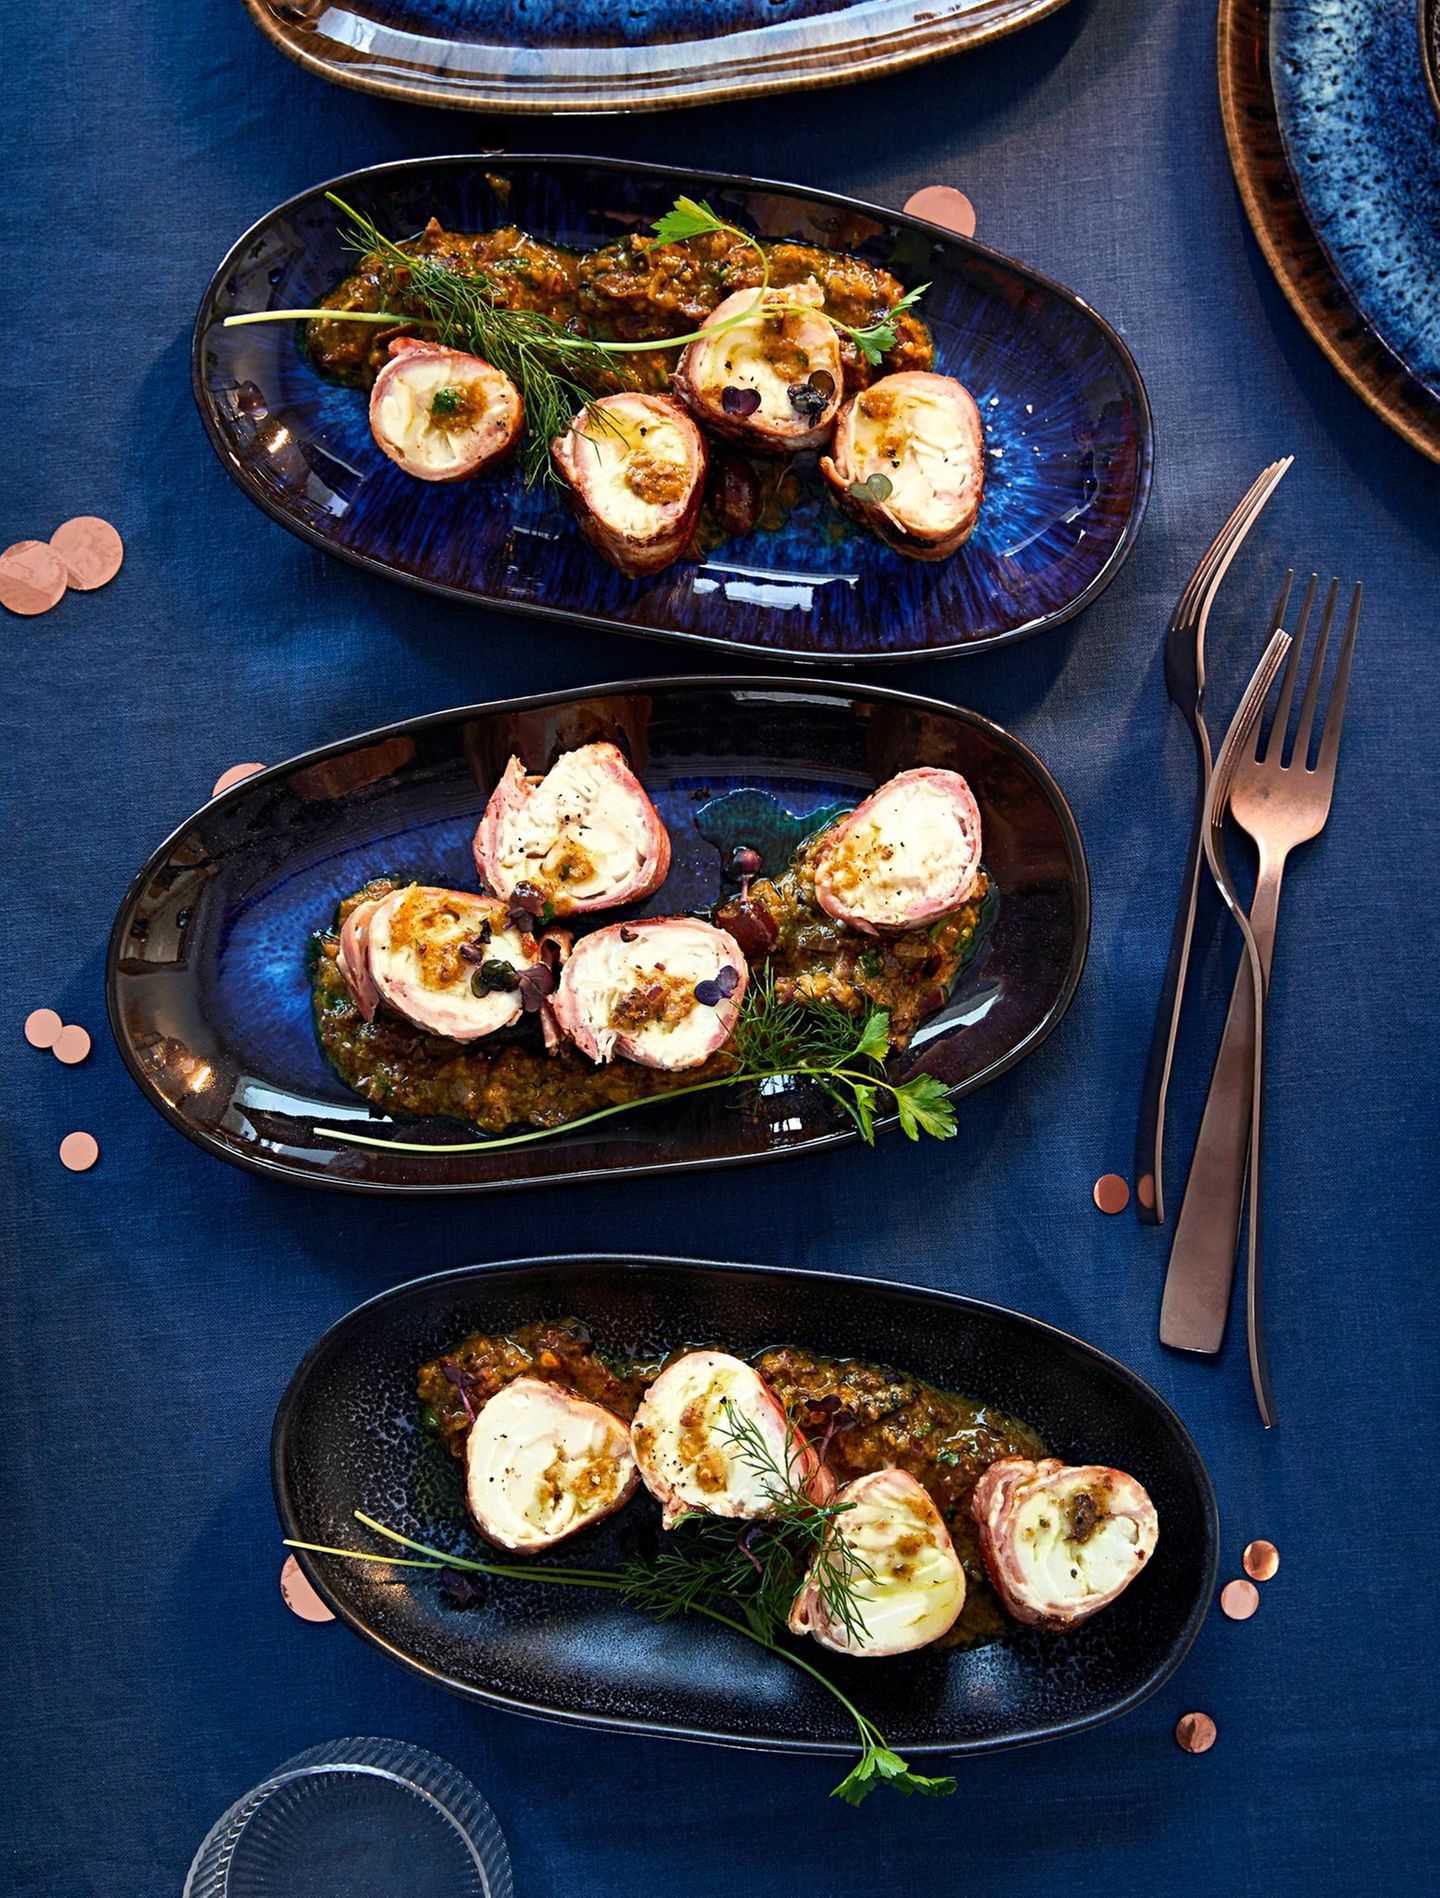 Röllchen aus Kabeljau mit Bacon und Kräutern auf blauen Tellern angerichtet